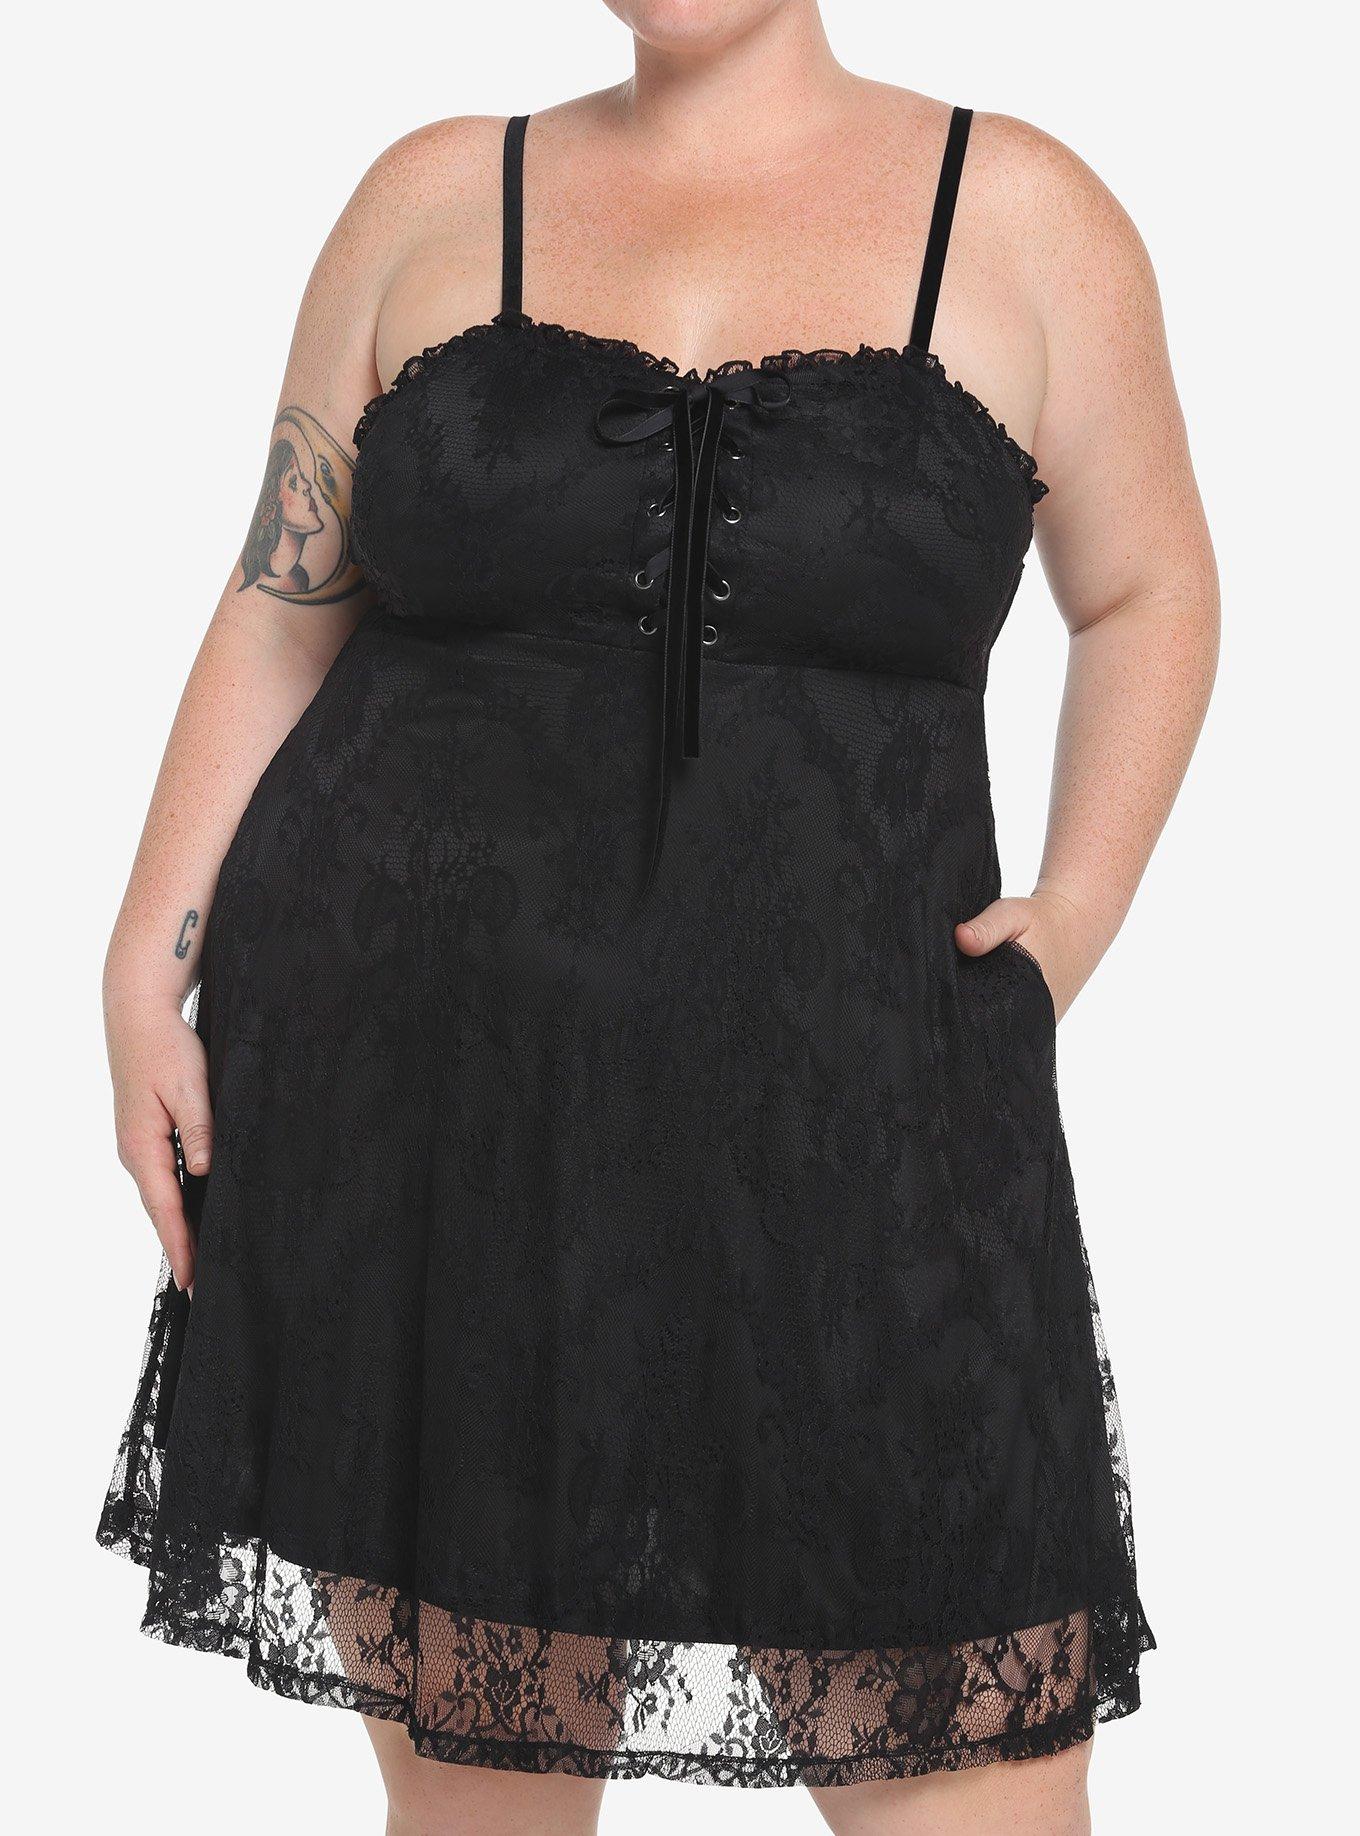 Black Lace-Up Dress Plus Size, BLACK, hi-res